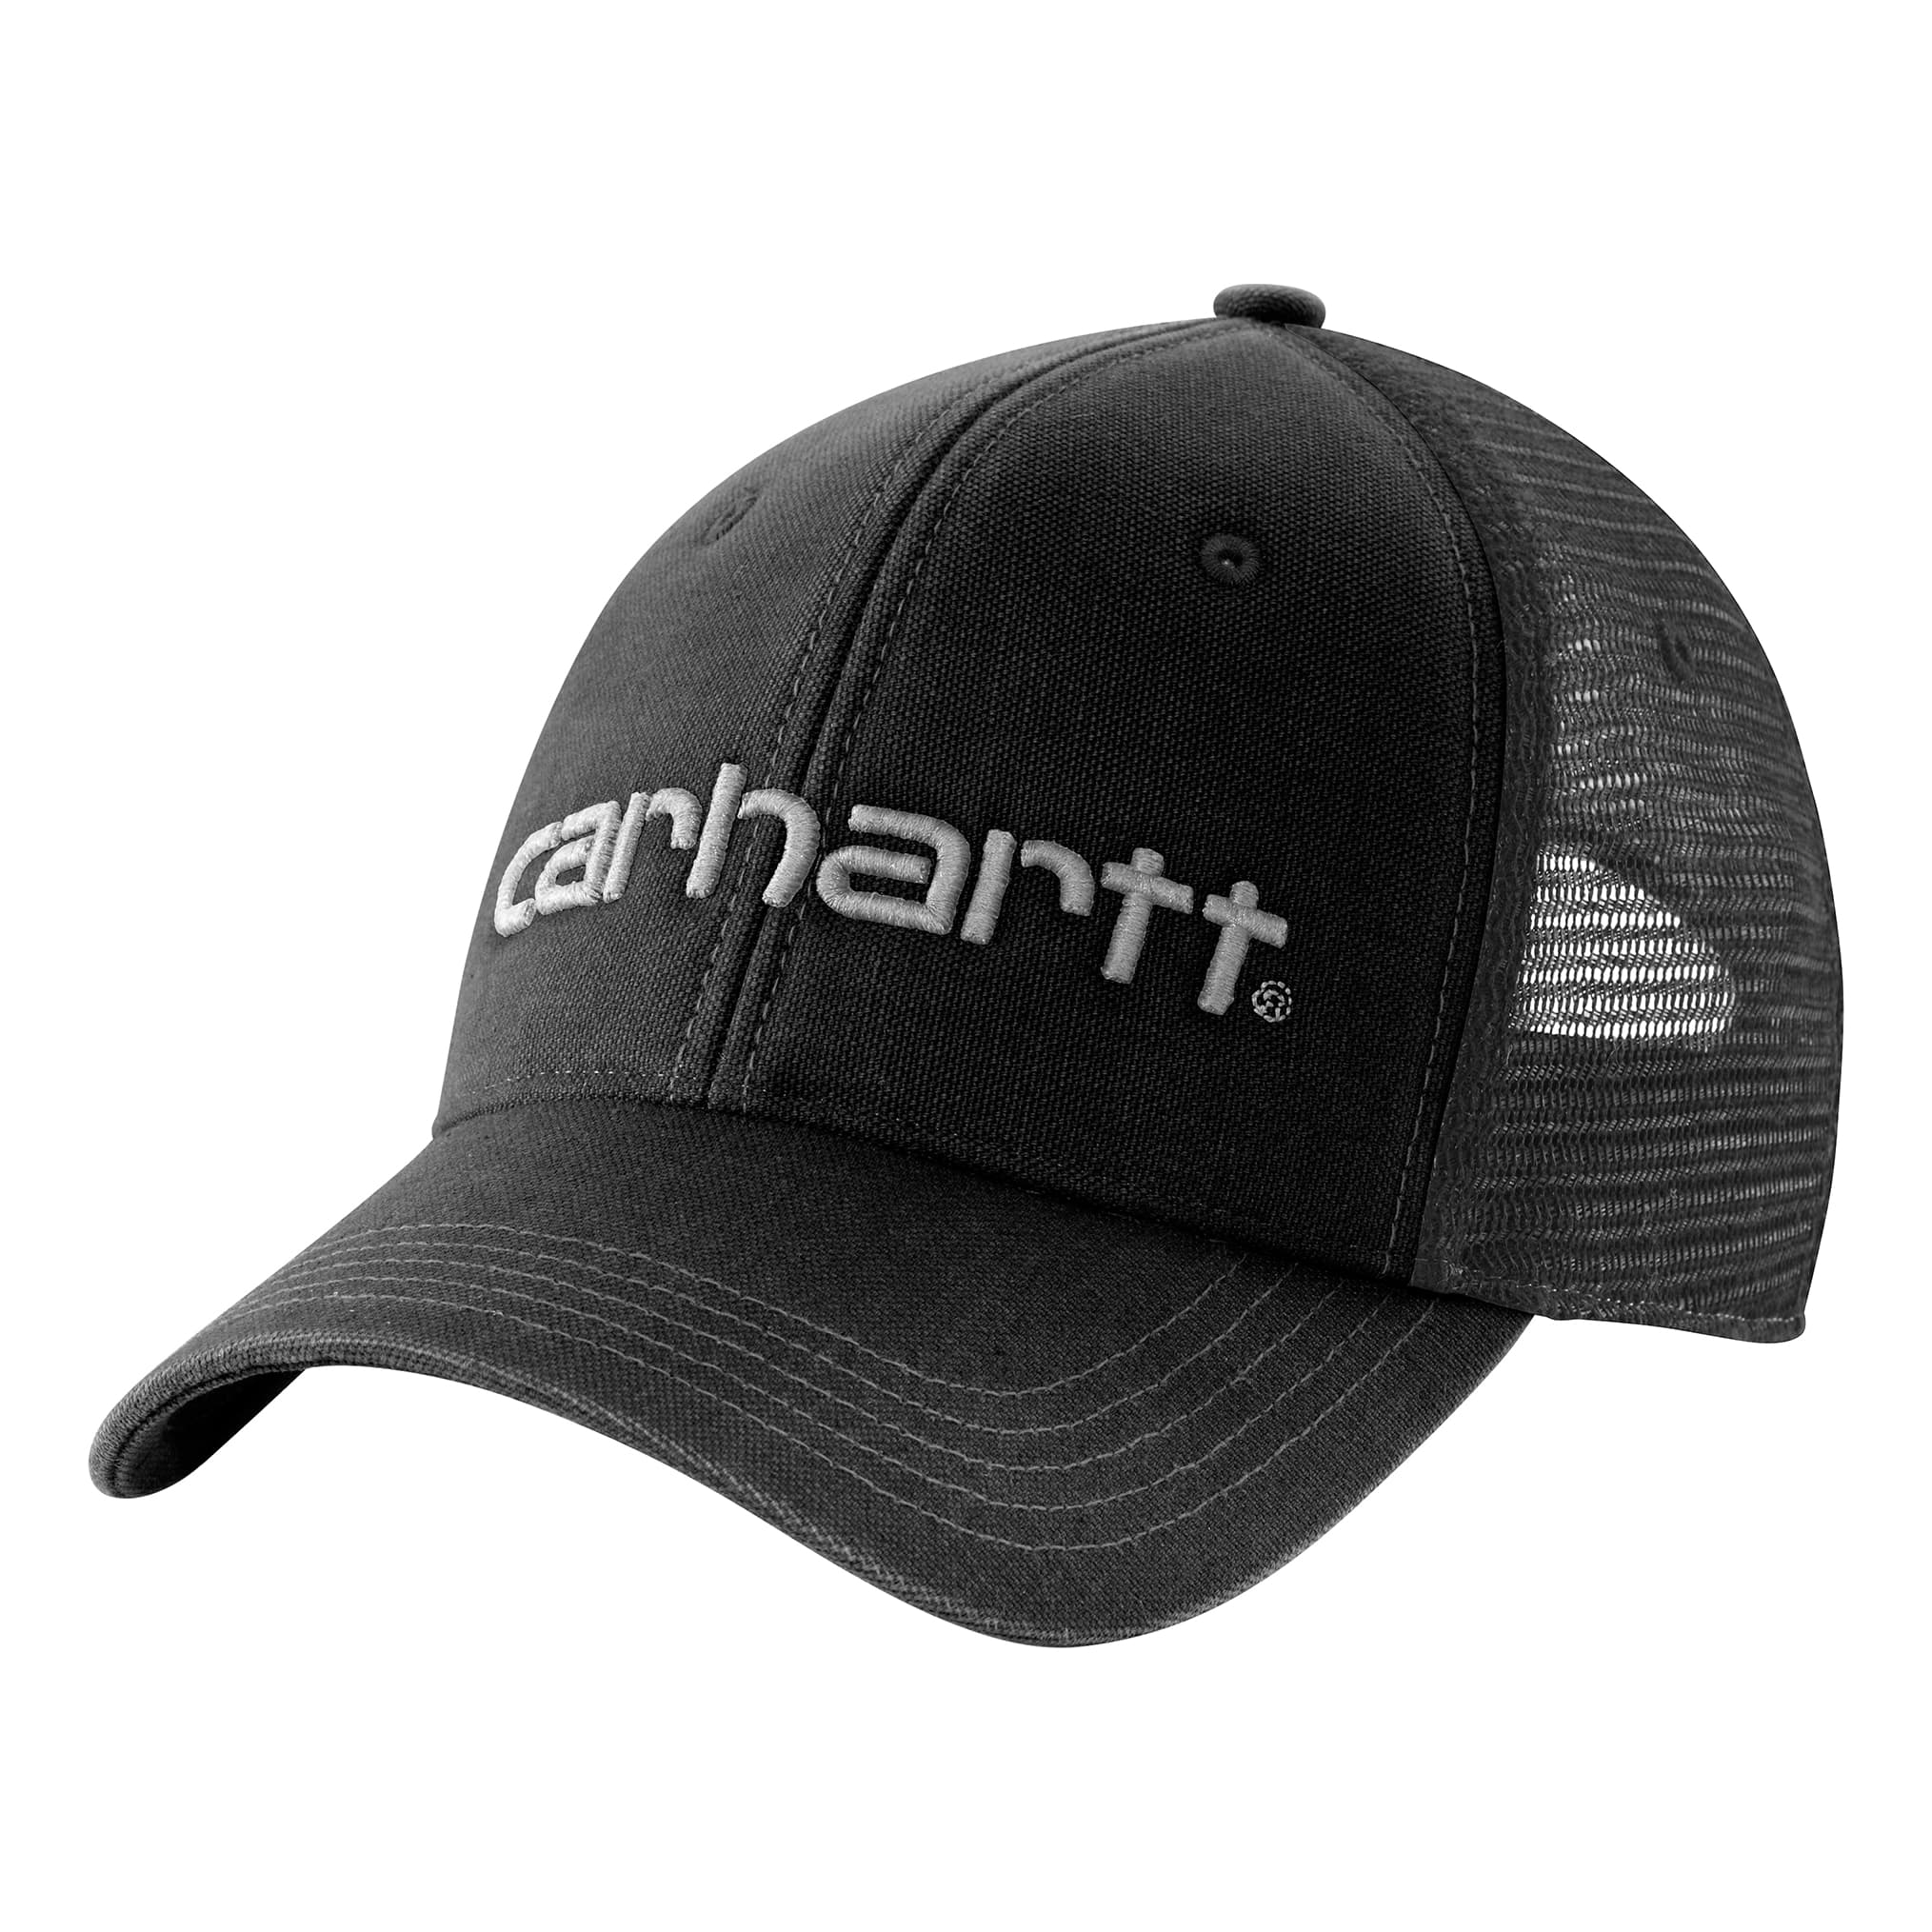 Carrhart Hats for Men